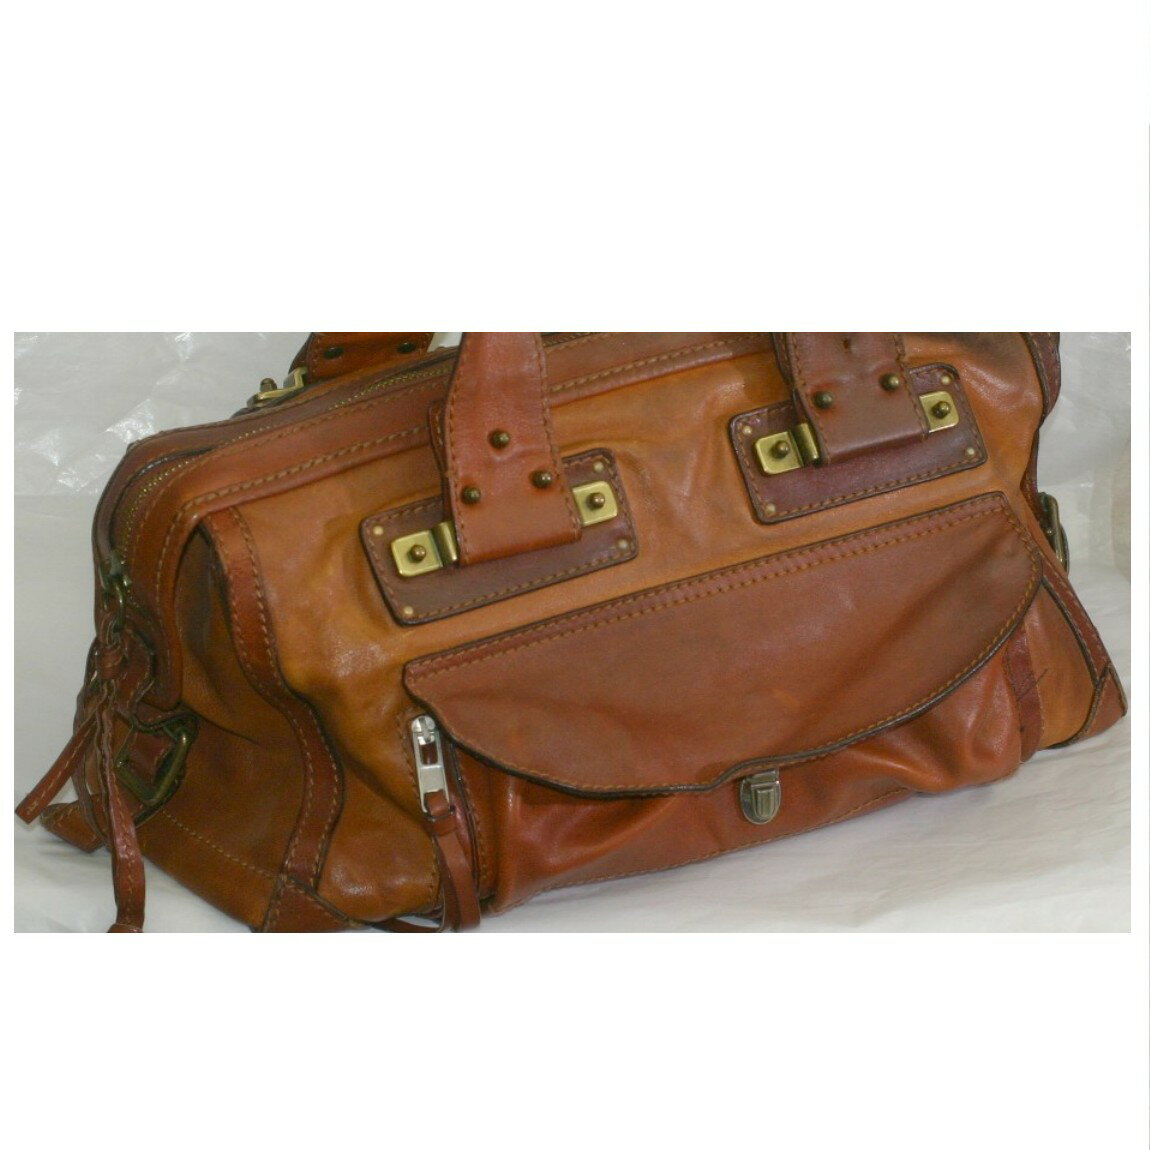 【中古】本物クロエ丈夫な茶色い革素材のアンティークなボストンバッグ兼旅行鞄 ○C12-342